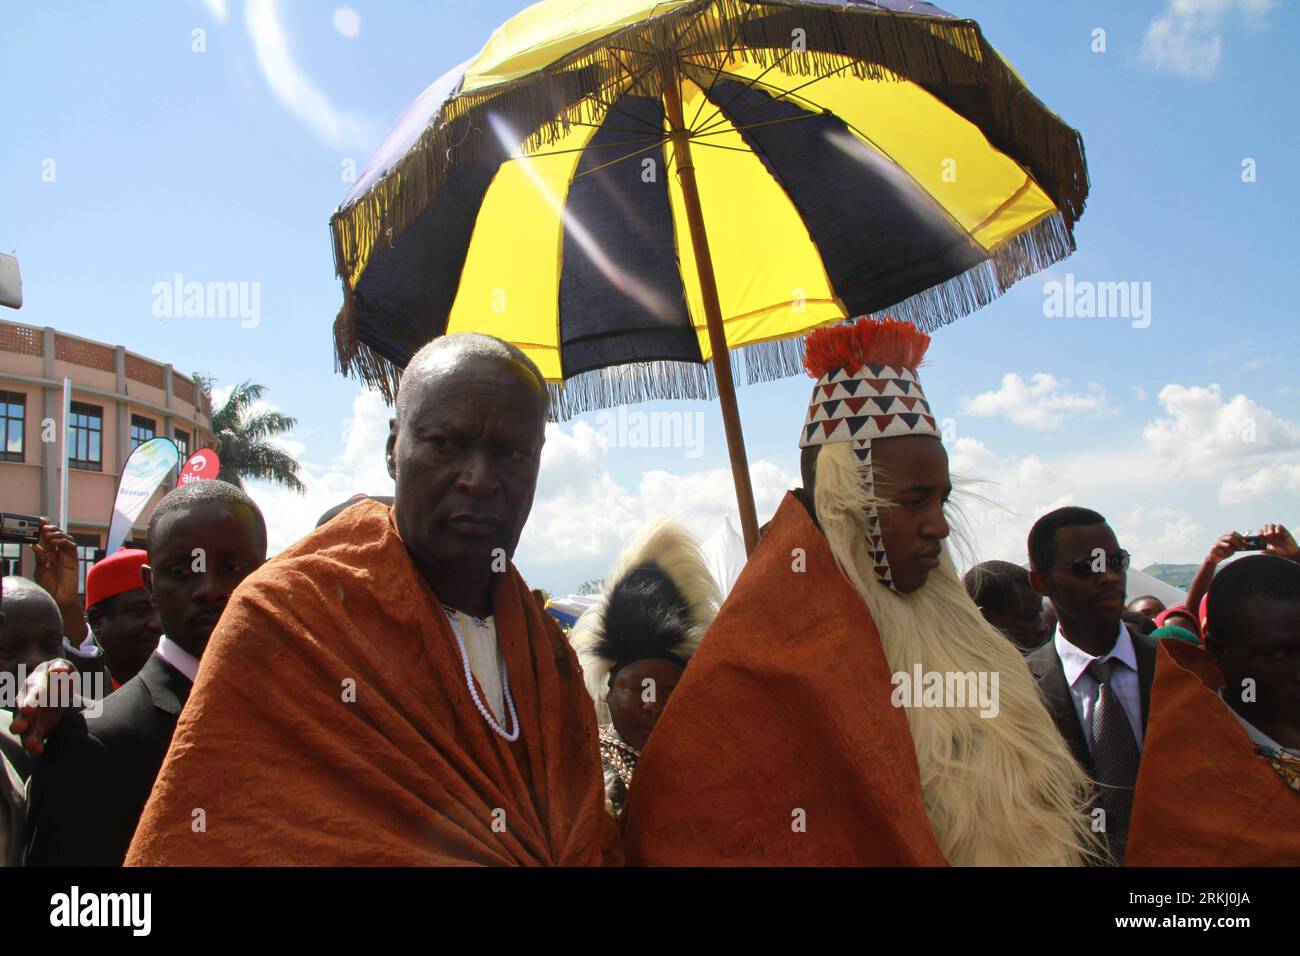 Bildnummer : 55935637 Datum : 10.09.2011 Copyright : imago/Xinhua OUGANDA, 11 septembre 2011 (Xinhua) -- Oyo Nyimba (R), roi de Tooro, assiste à une cérémonie annuelle dans le Royaume de Tooro dans l'ouest de l'Ouganda, le 10 septembre 2011. Le Royaume de Tooro, l'un des sept royaumes de l'Ouganda, est situé dans la partie occidentale du pays avec une population de 2 millions d'habitants. (Xinhua/Yuan Qing) (cl) UGANDA-TOORO-KING-CEREMONY PUBLICATIONxNOTxINxCHN People Politik xjh x0x premiumd 2011 quer 55935637 Date 10 09 2011 Copyright Imago XINHUA Ouganda sept 11 2011 XINHUA Oyo r le Roi de assiste à la cérémonie annuelle dans le Royaume de Th Banque D'Images